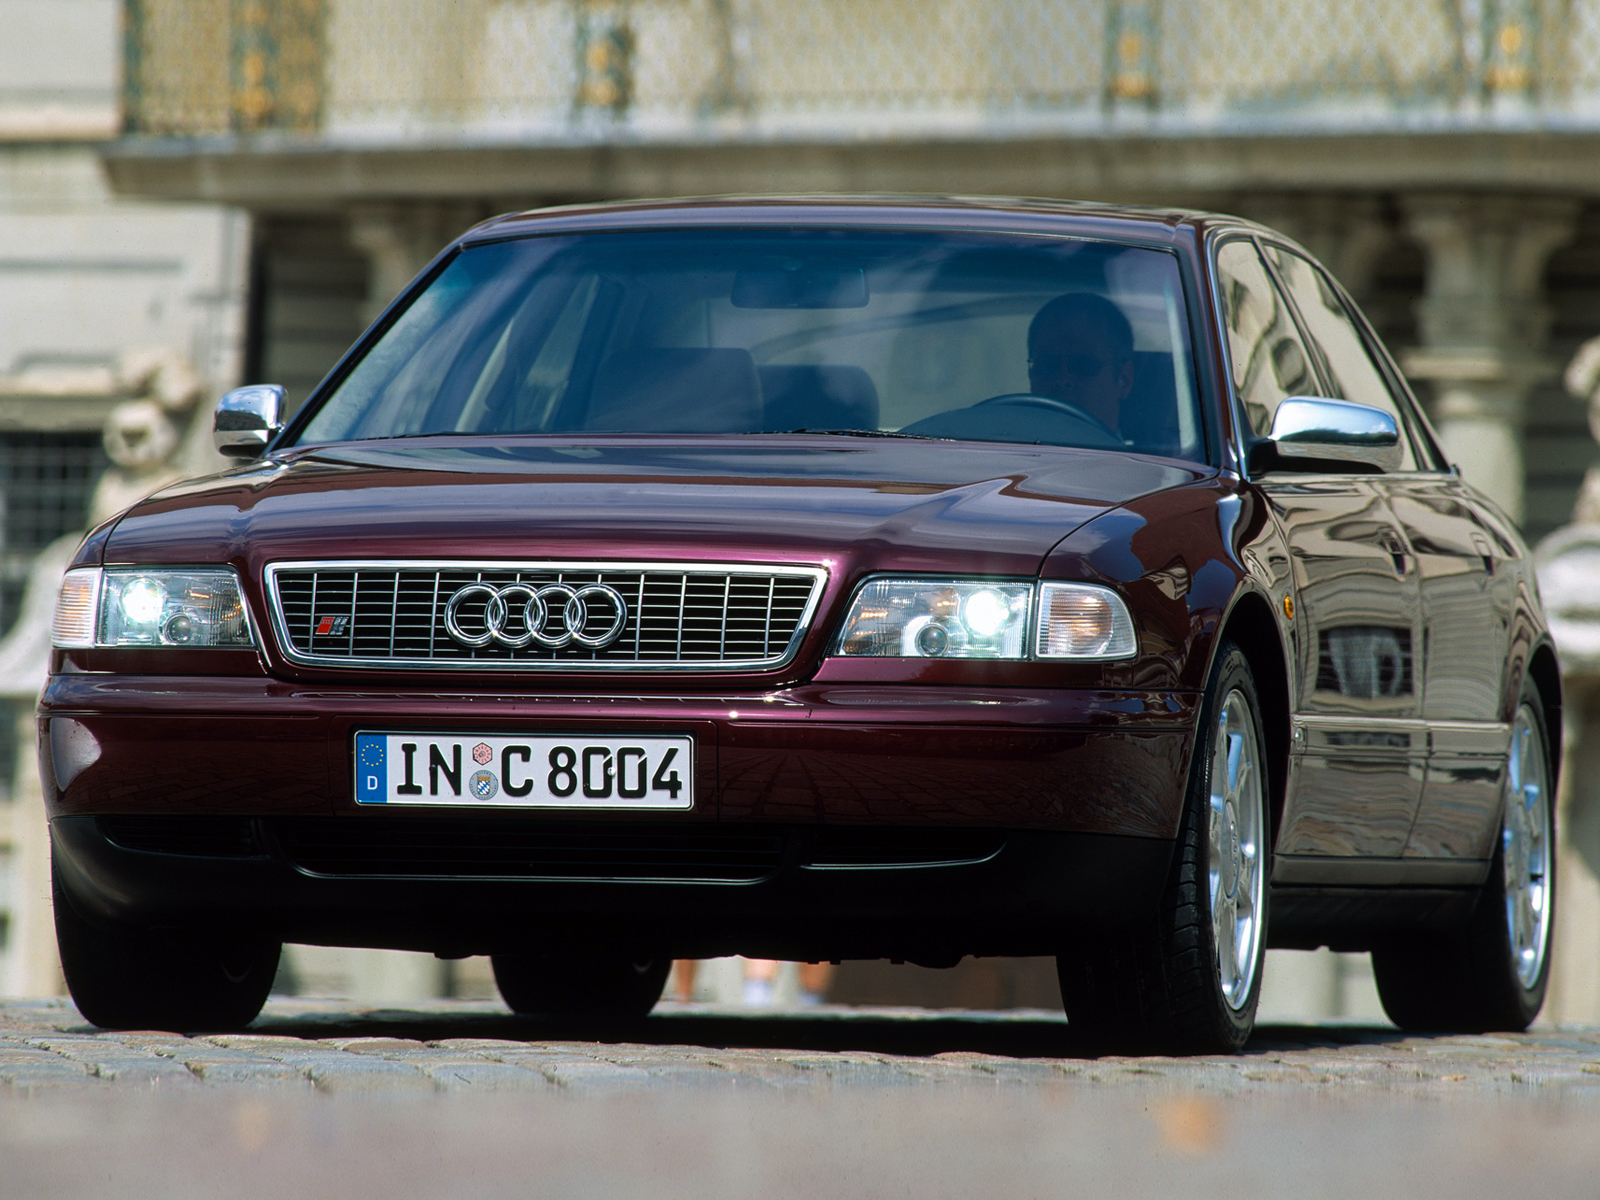 8 от 1 июля 1996. Audi s8 d2 1996. Ауди s8 d2. Audi s8 1998 4.2. Audi a8 1998.